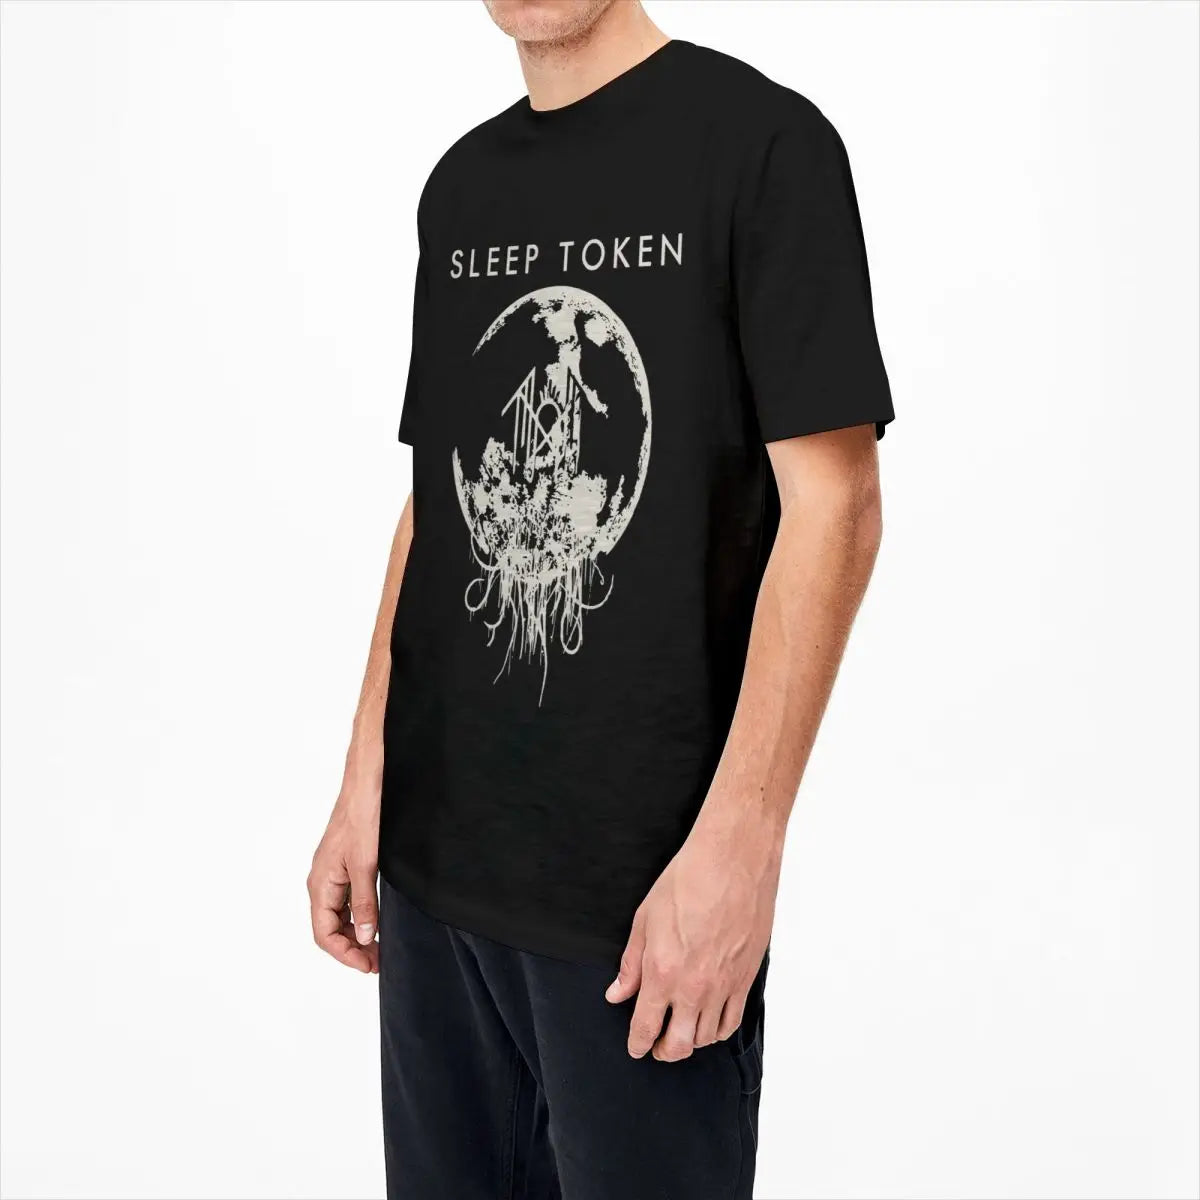 Sleep Token Metal Band Shirt - Vintage Cotton Rock Music Tee for Men & Women